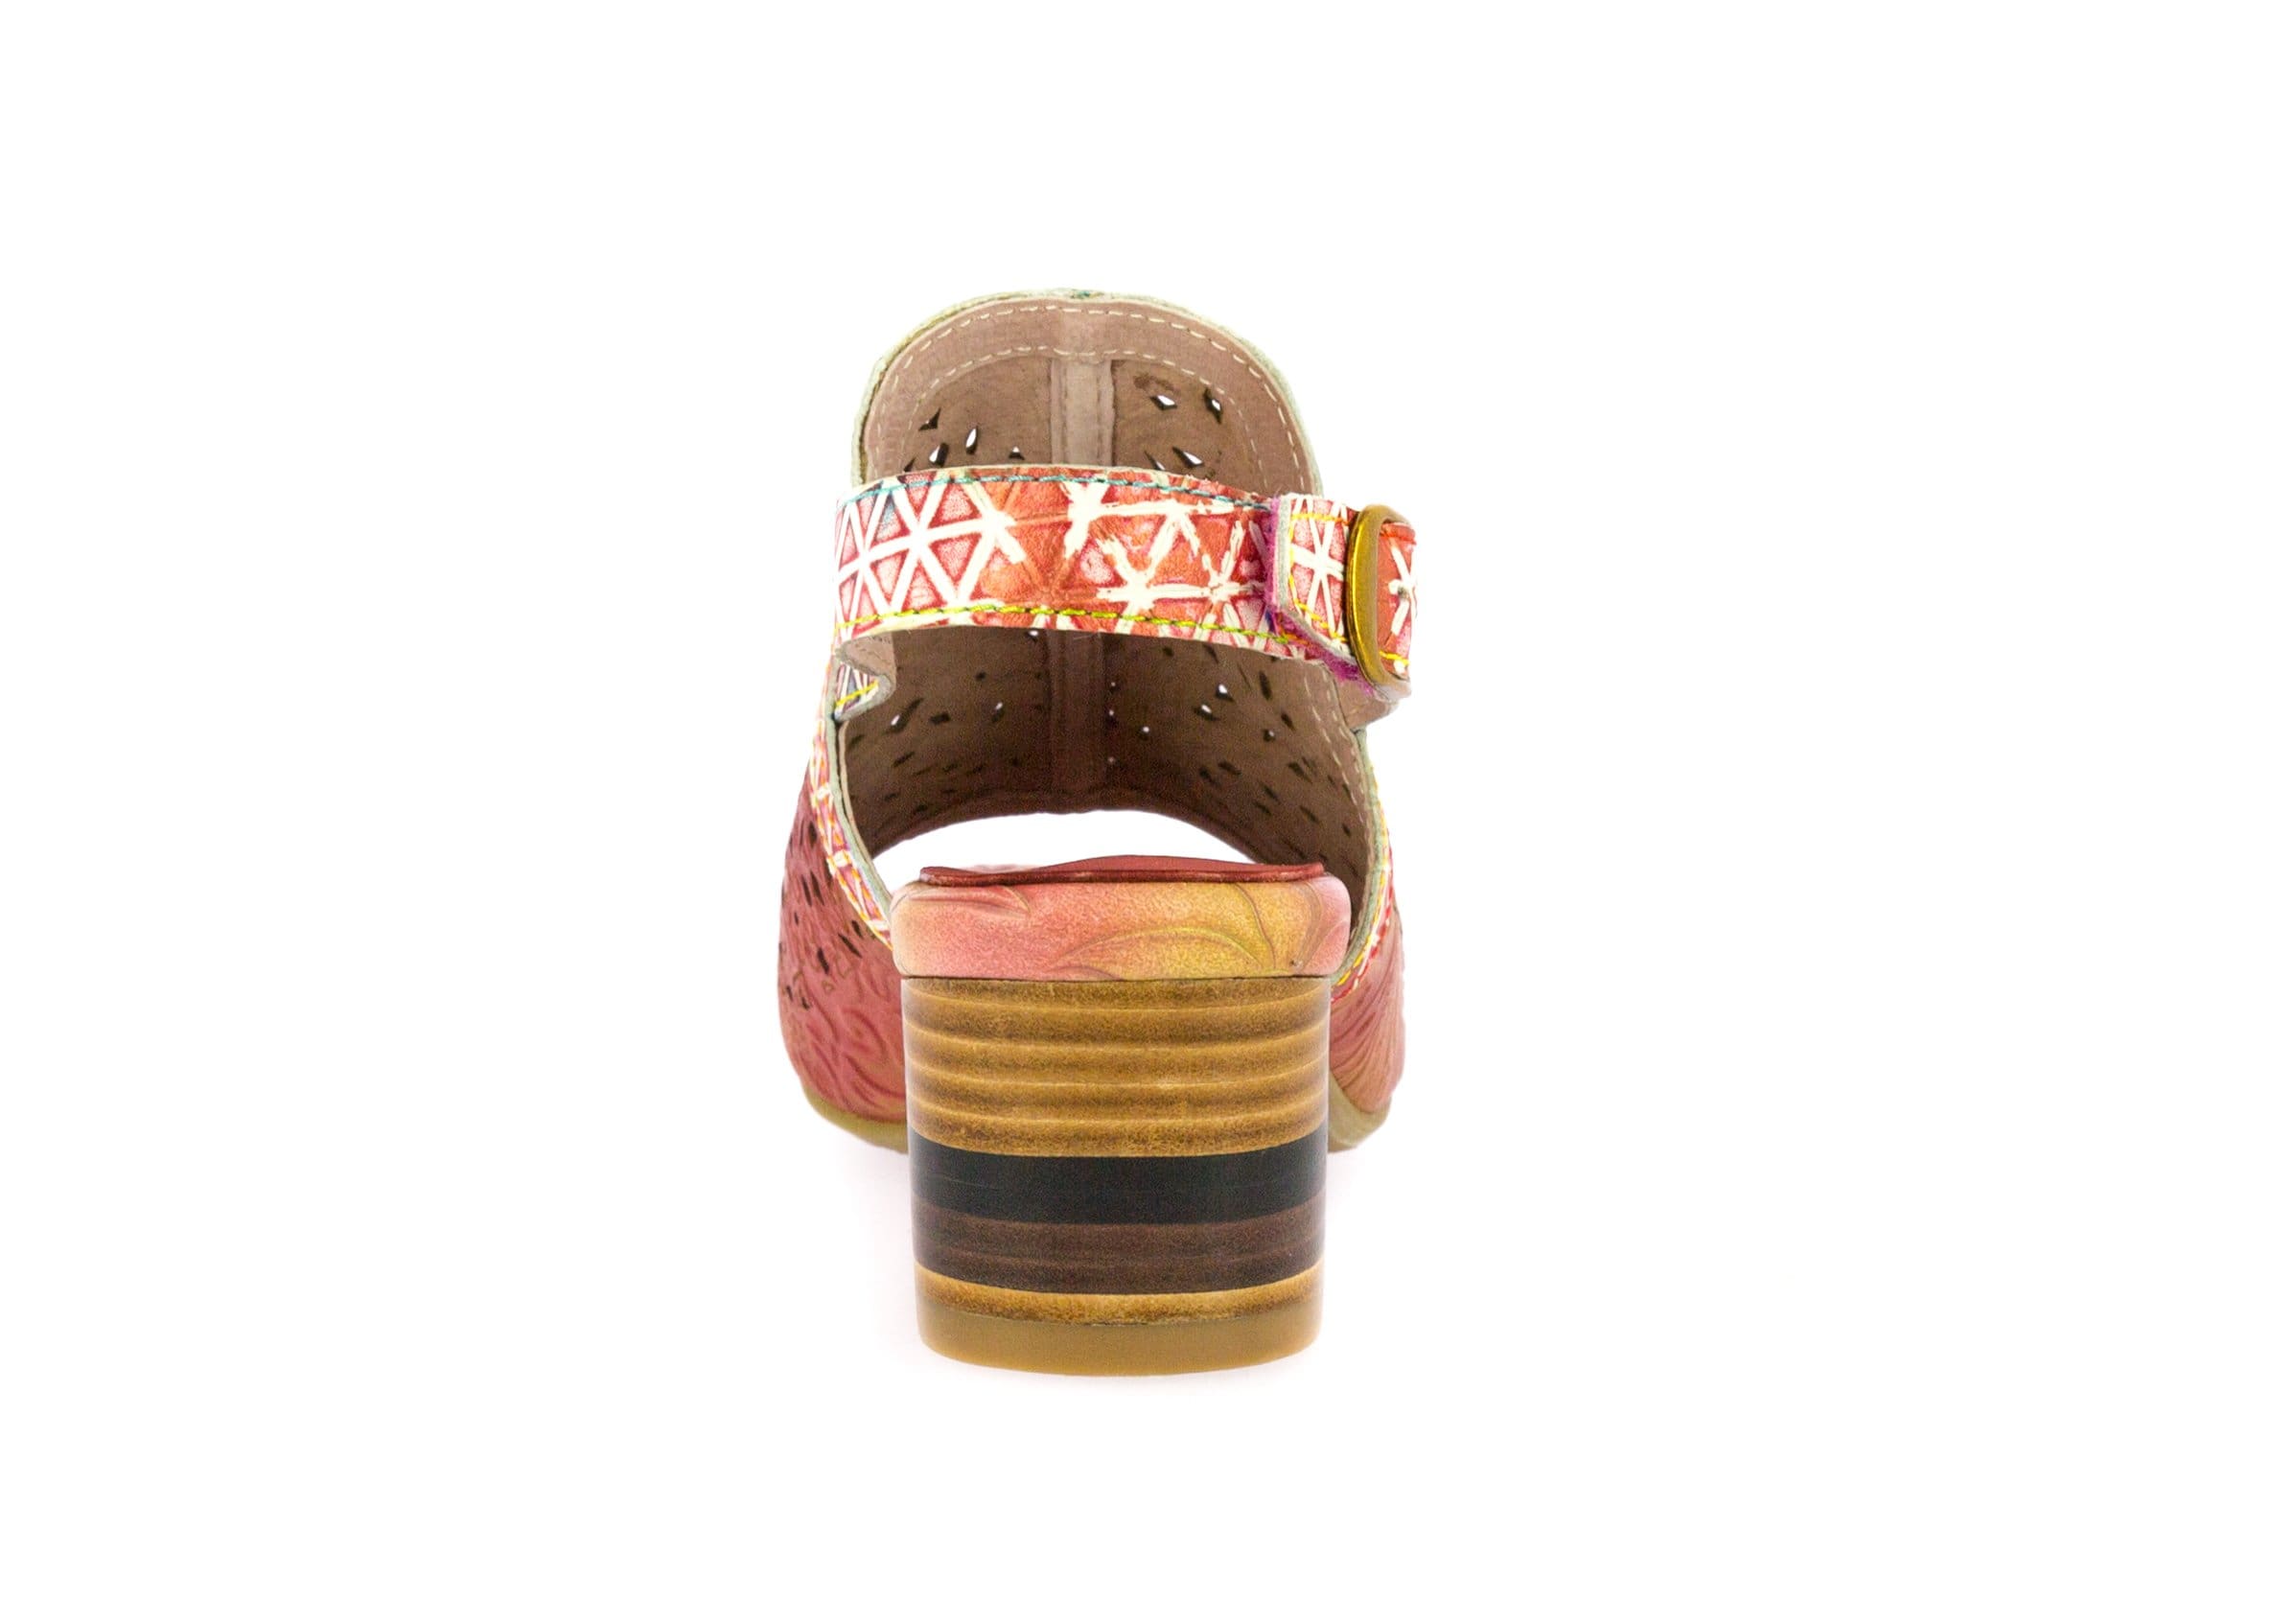 Shoe FACNAO02 - Sandal